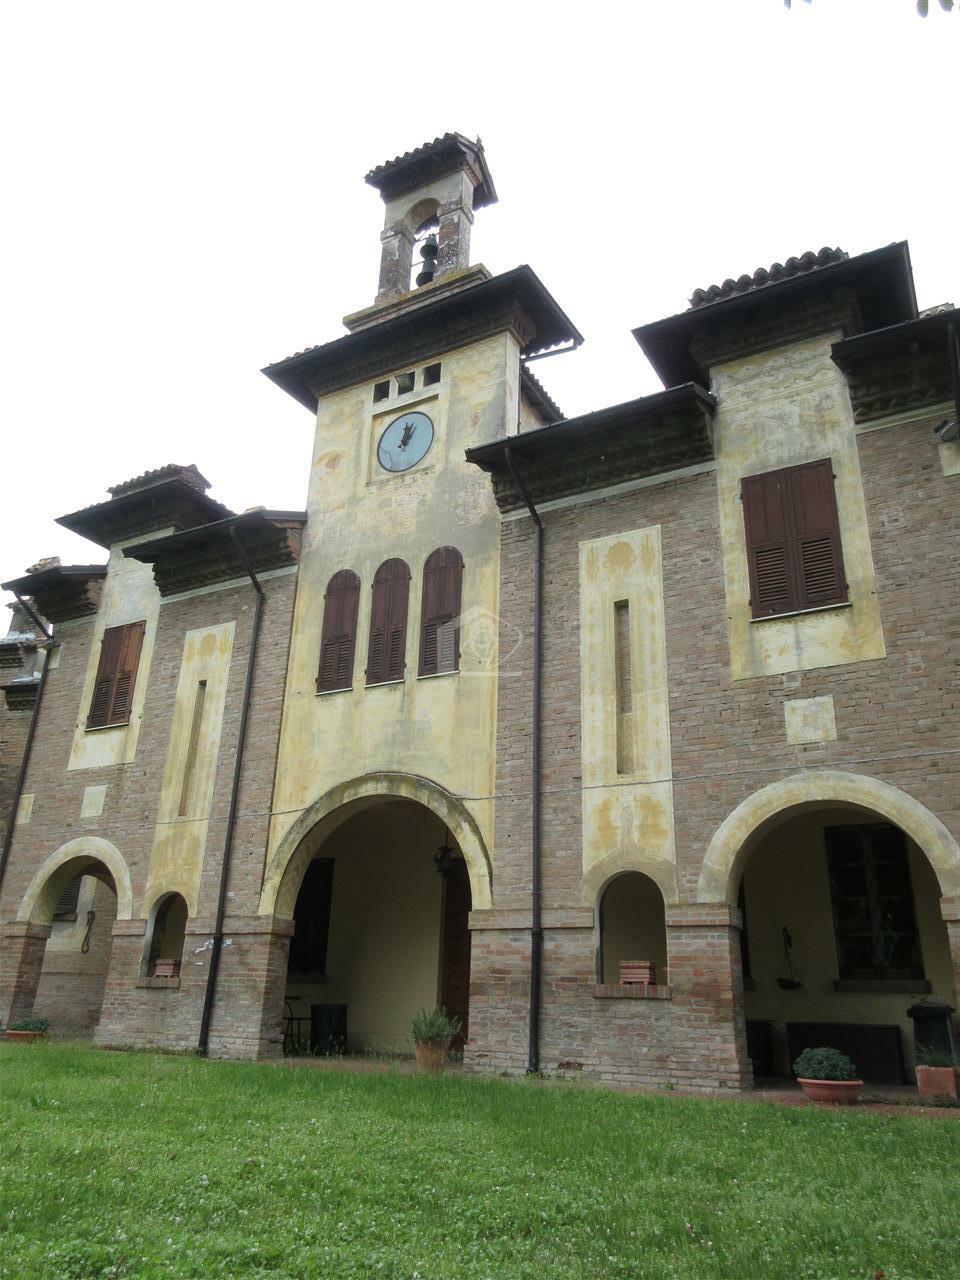 Azienda agricola in vendita a Piacenza pianura a ridosso delle colline